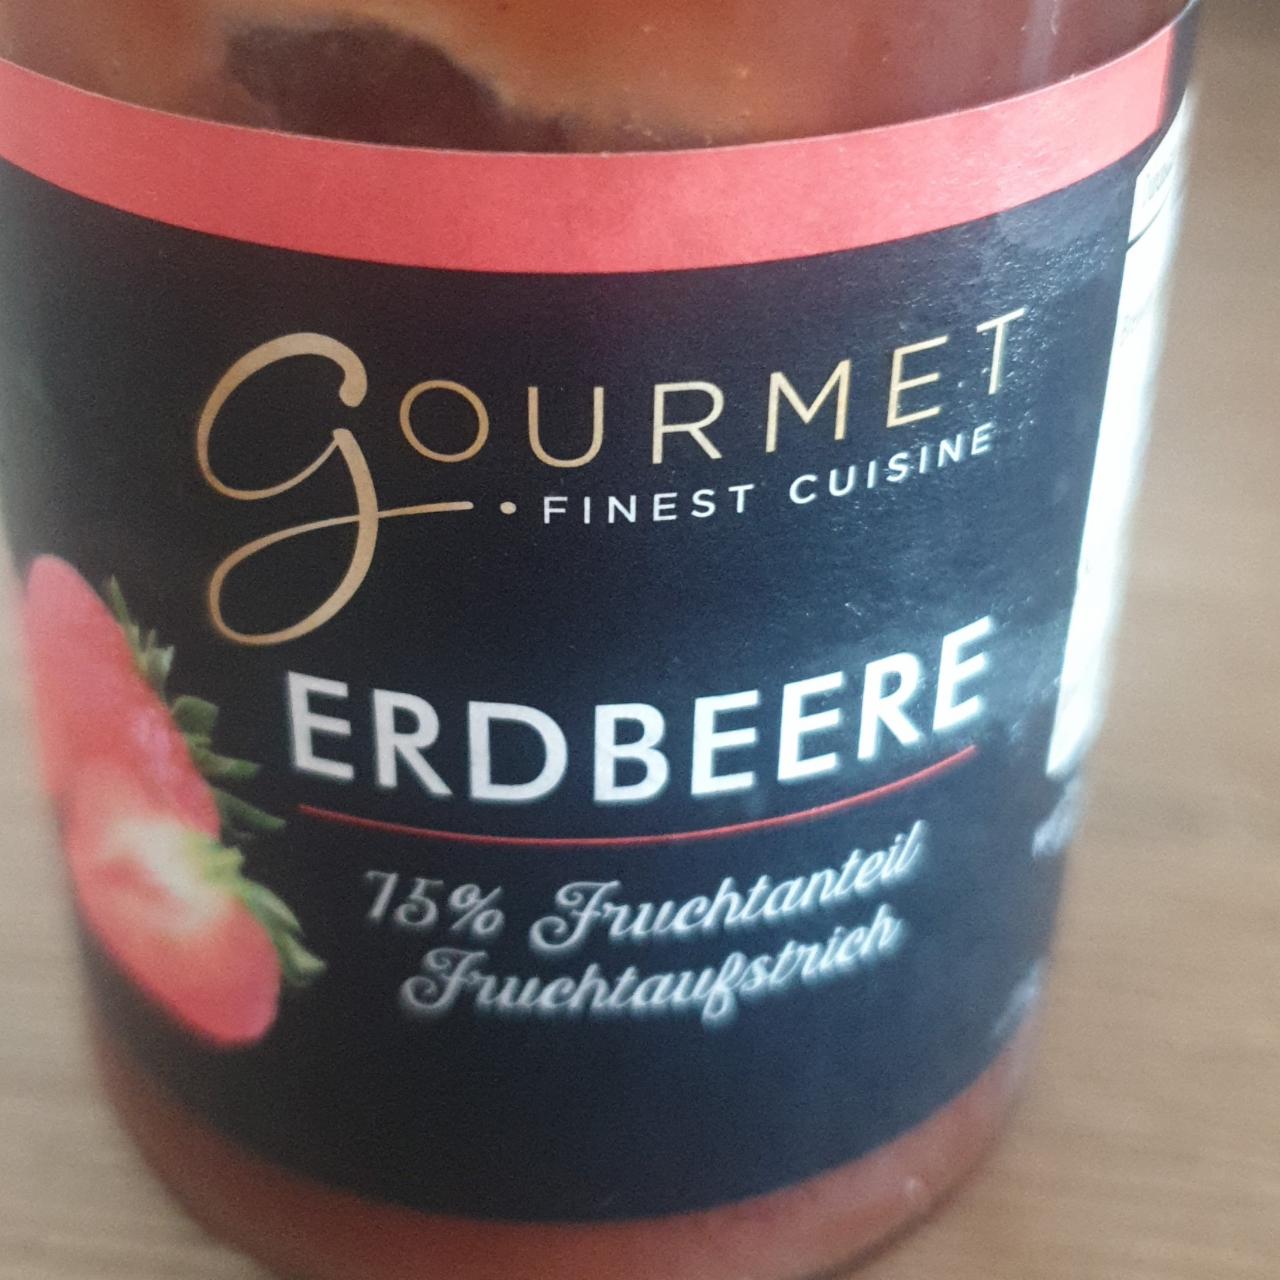 Fotografie - Erdbeere Fruchtaufstrich 75% Gourmet finest cuisine